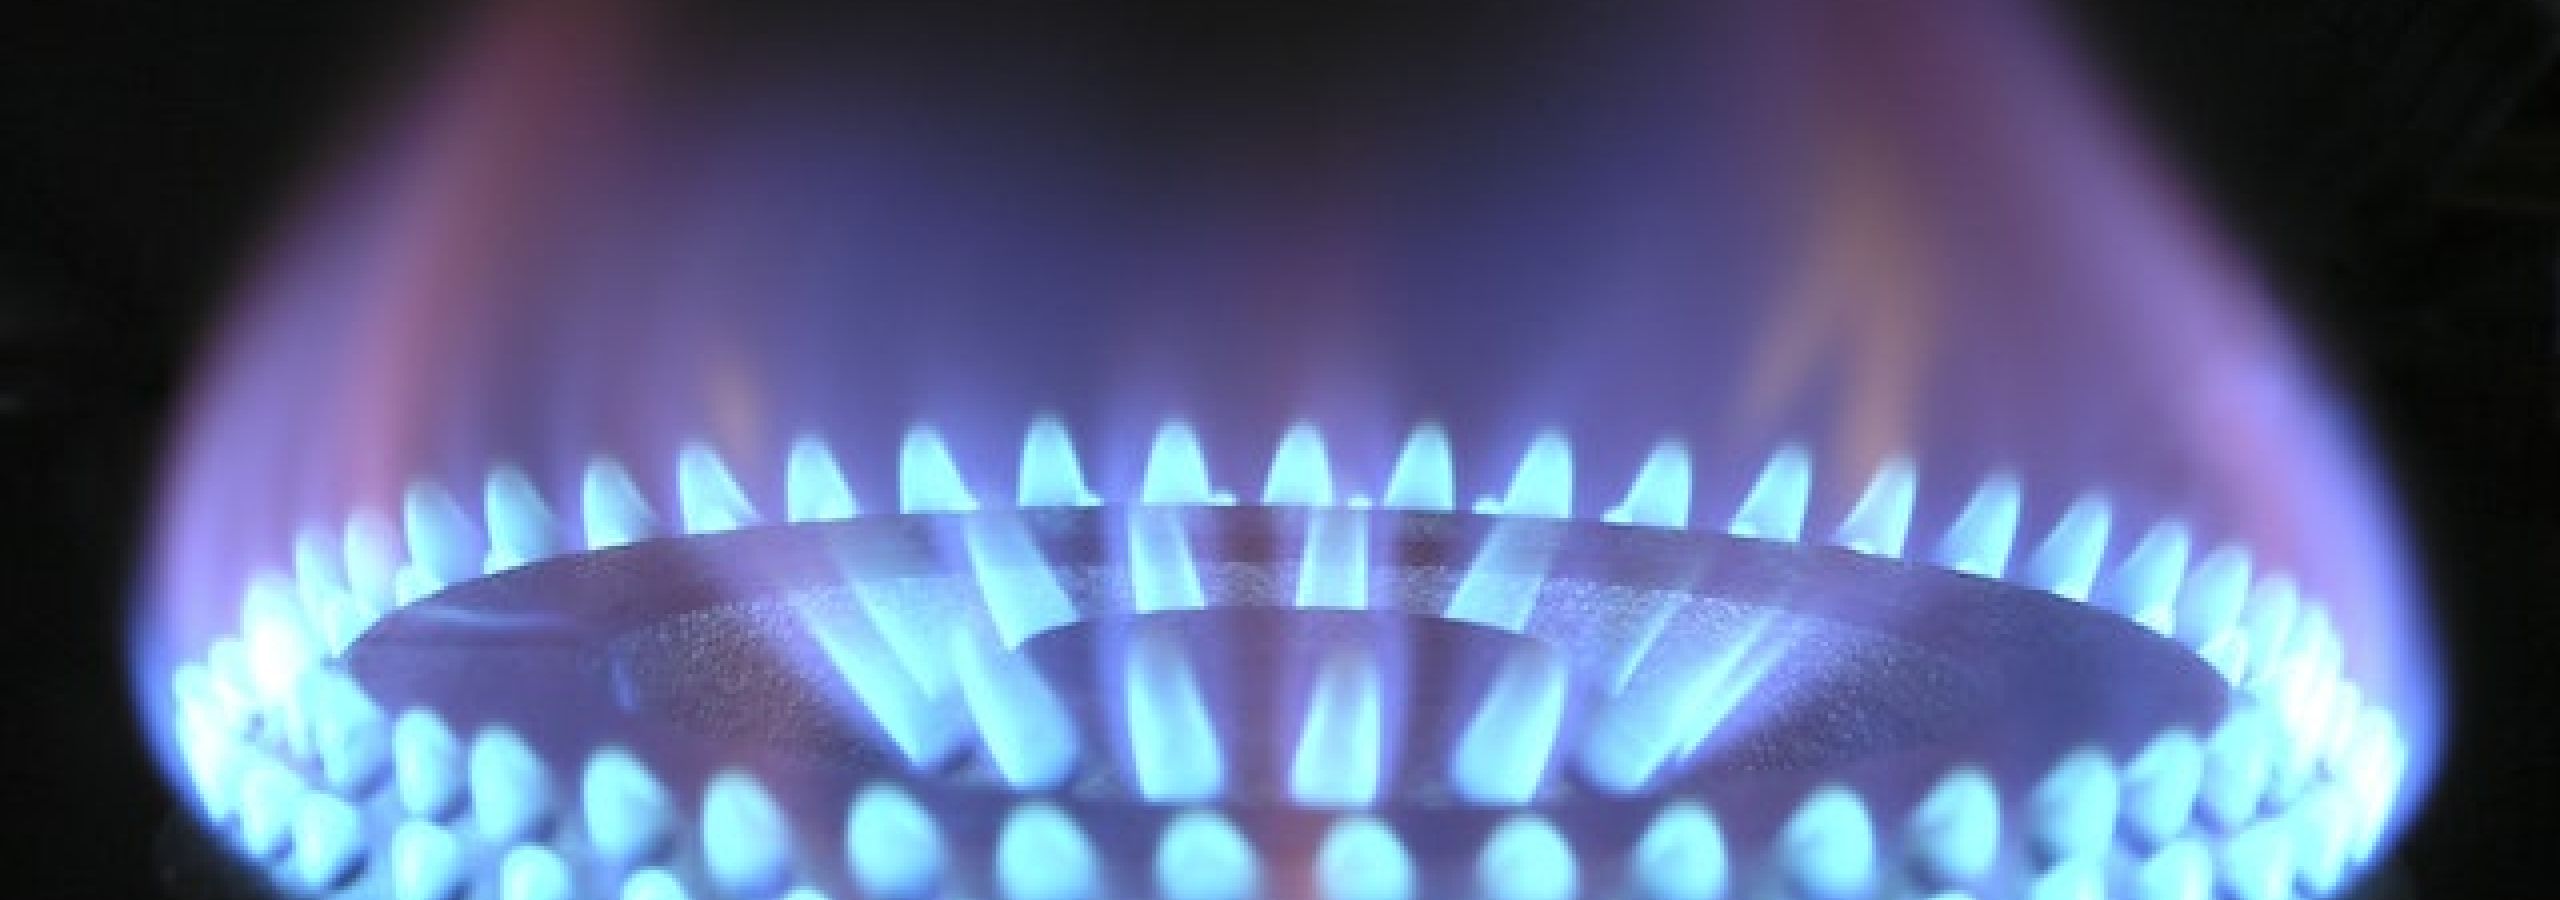 photo of gas range ignited